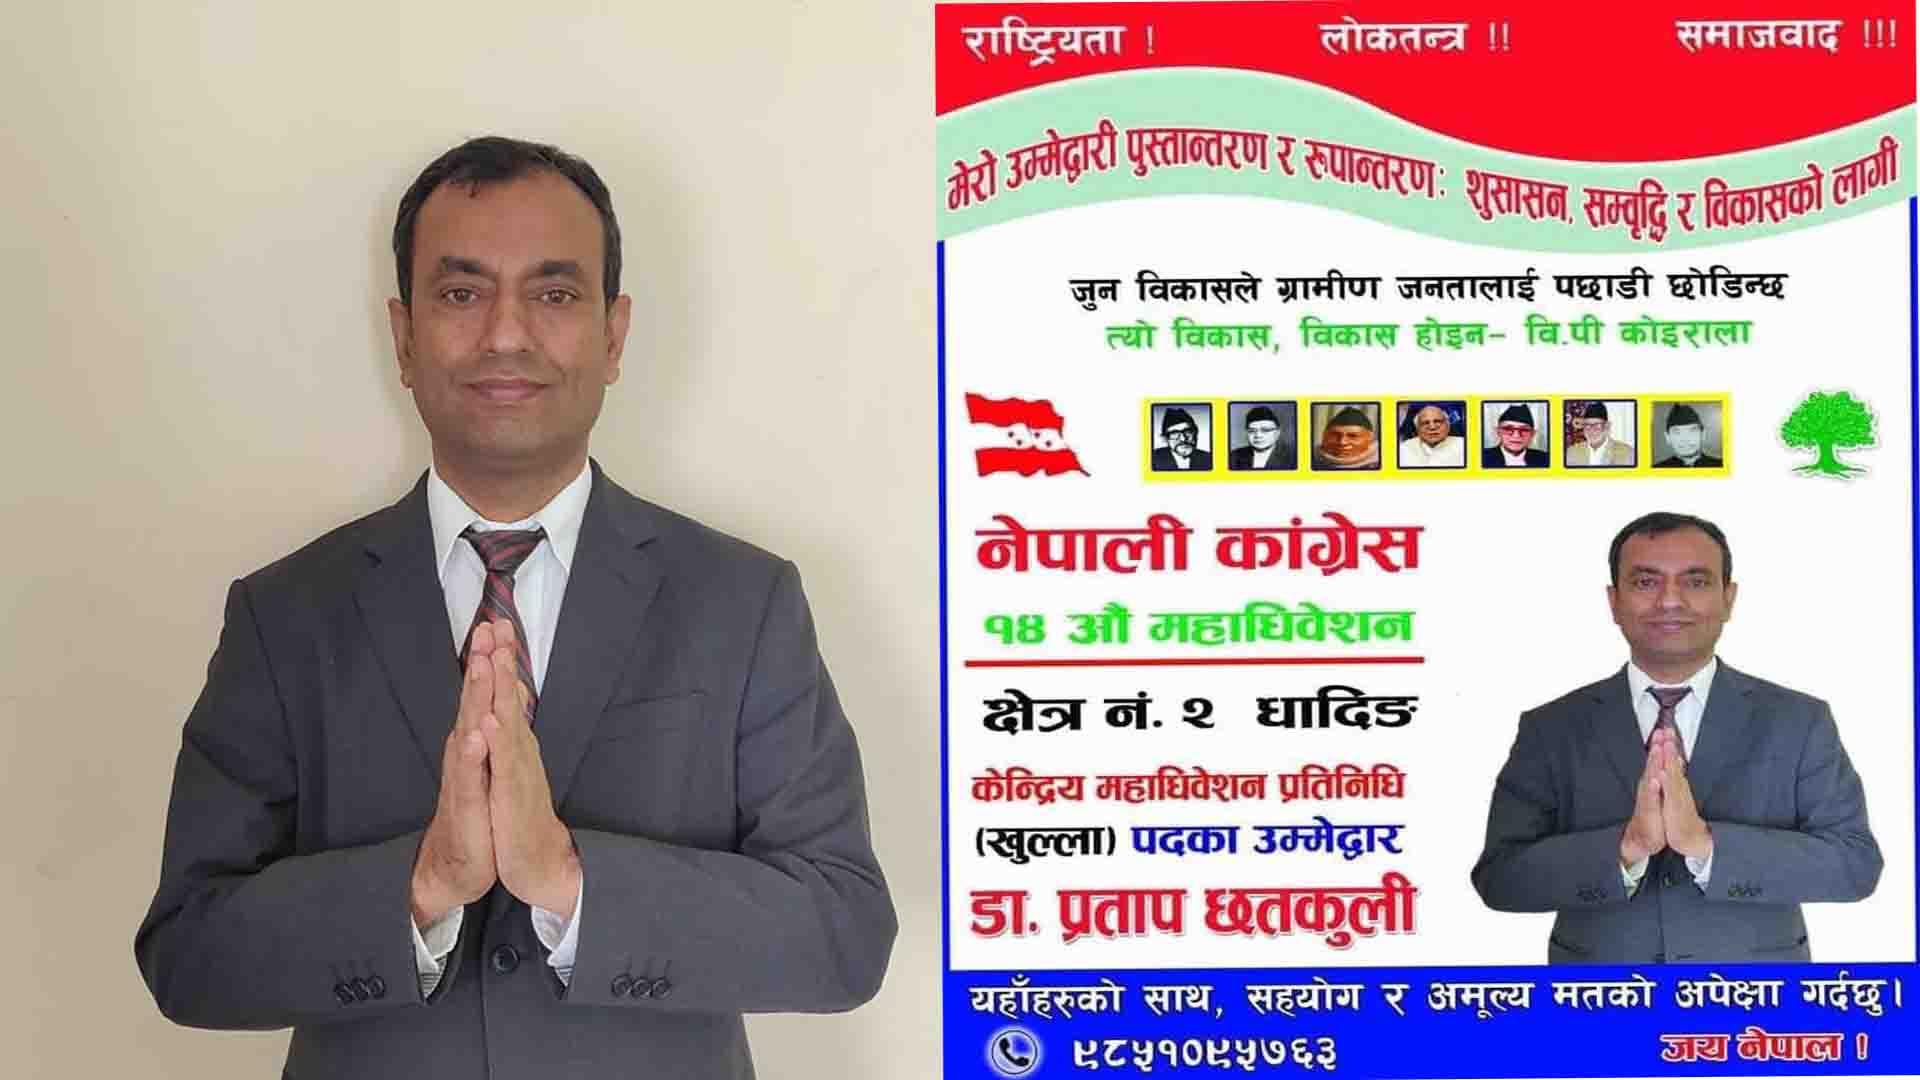 नेपाली काँग्रेसको केन्द्रिय महाधिवेशन प्रतिनिधिमा बौद्धिक नेता डा.प्रताप छतकुलीको उम्मेद्वारी